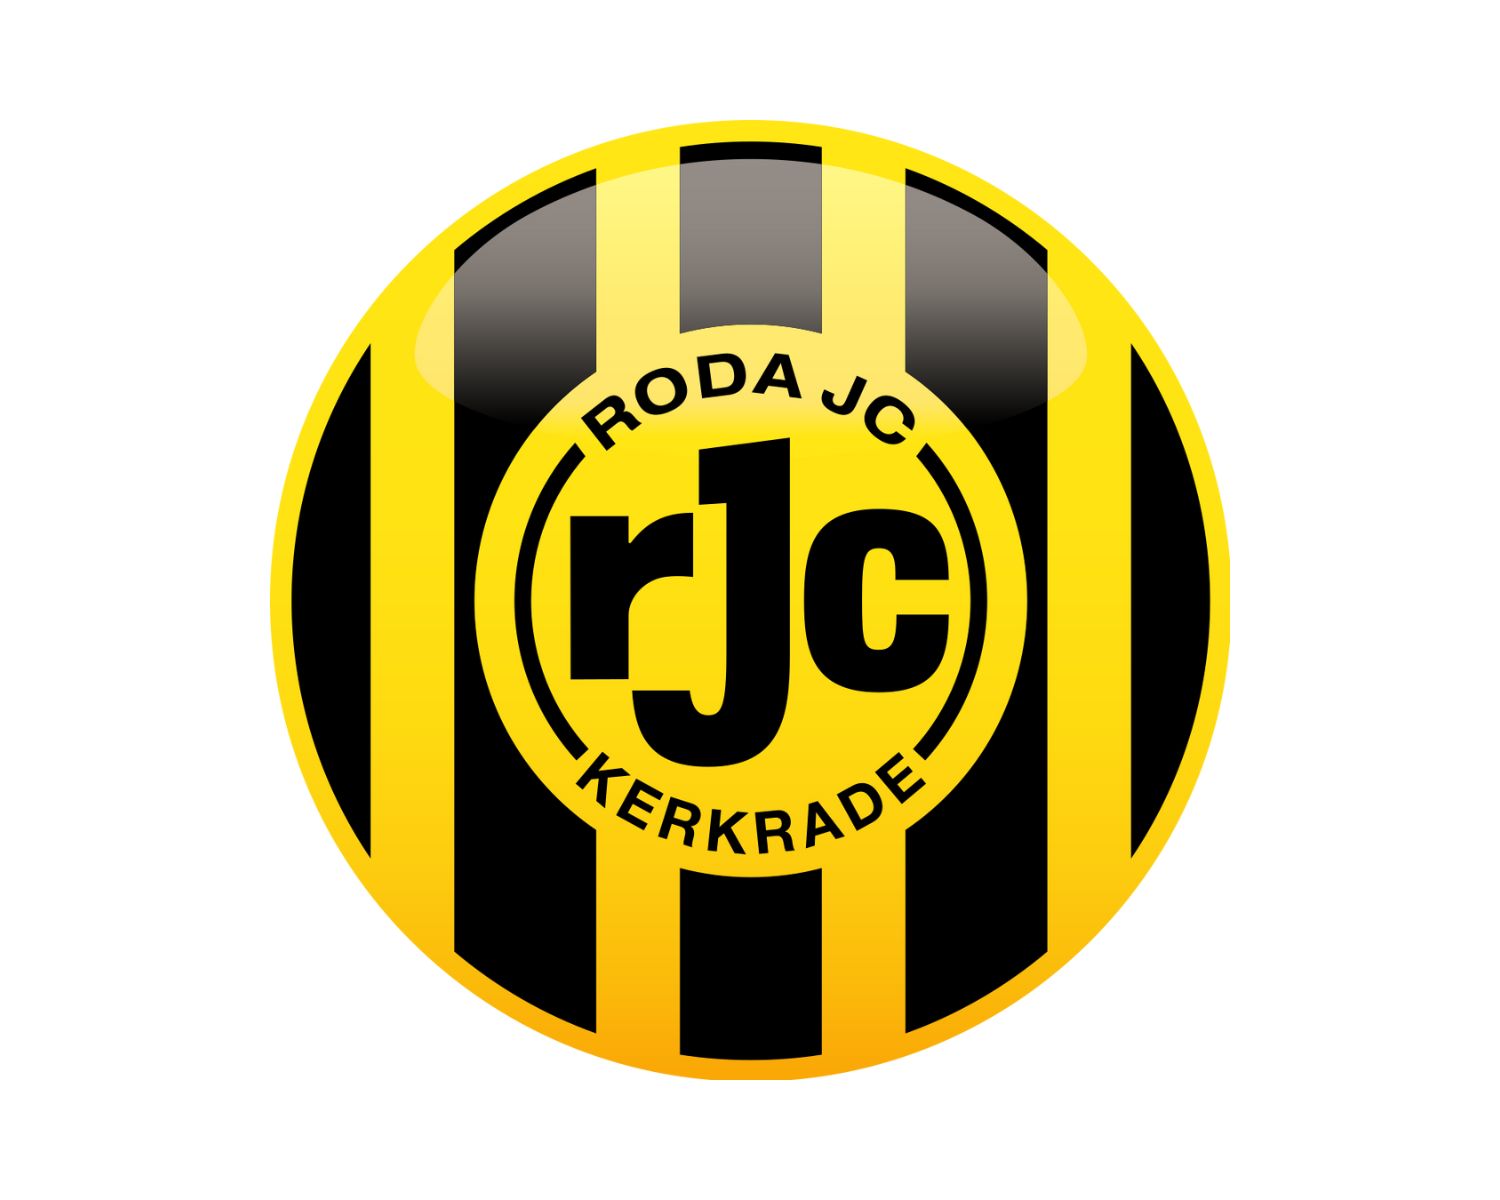 roda-jc-kerkrade-12-football-club-facts